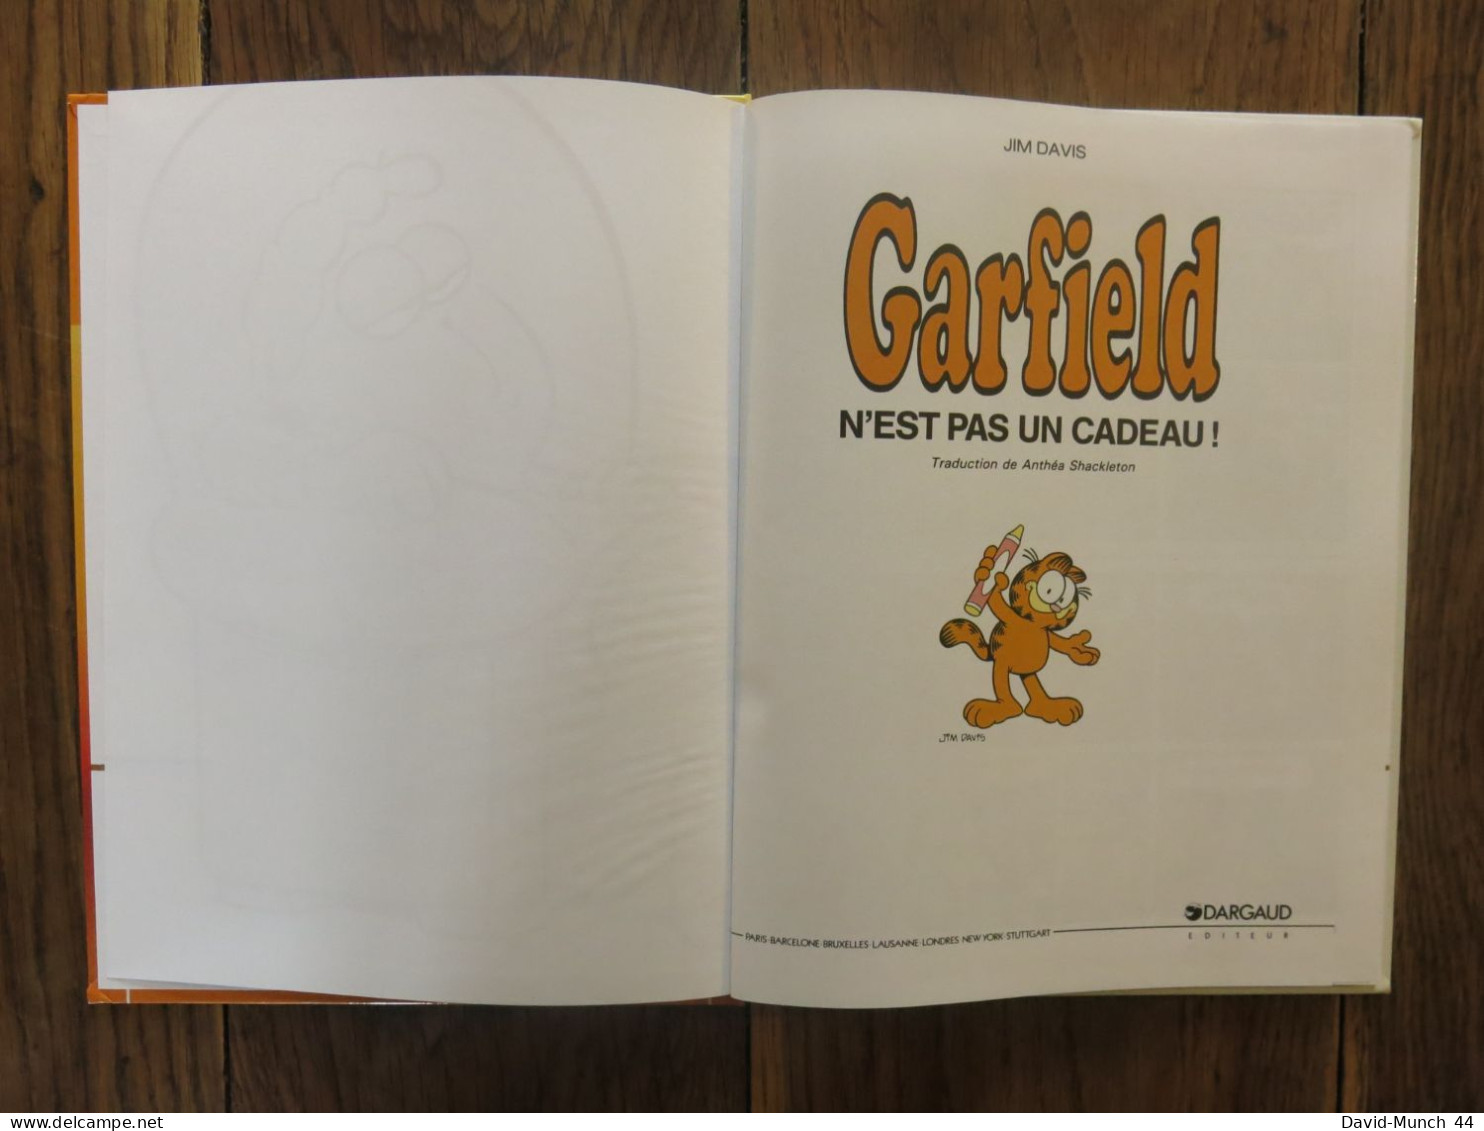 (BD) 2 albums de Garfiel (numéros 17 et 19) de Jim Davis. Dargaud éditeur. 1994